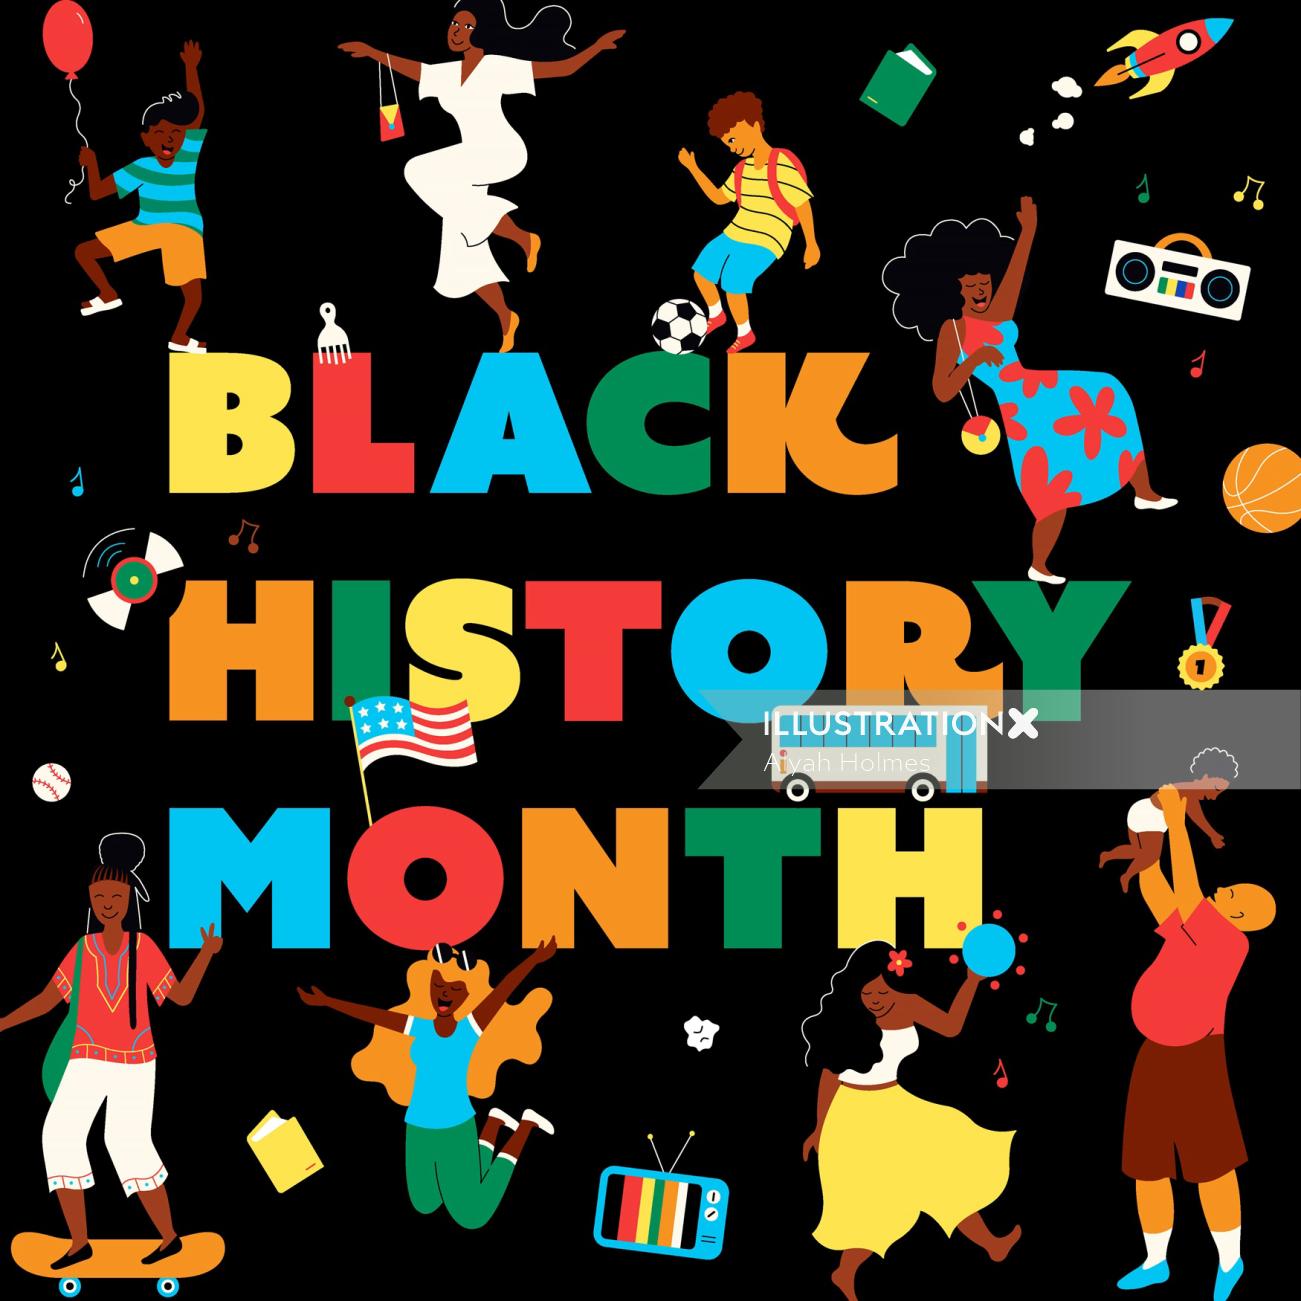 書道で黒人歴史月間を祝う